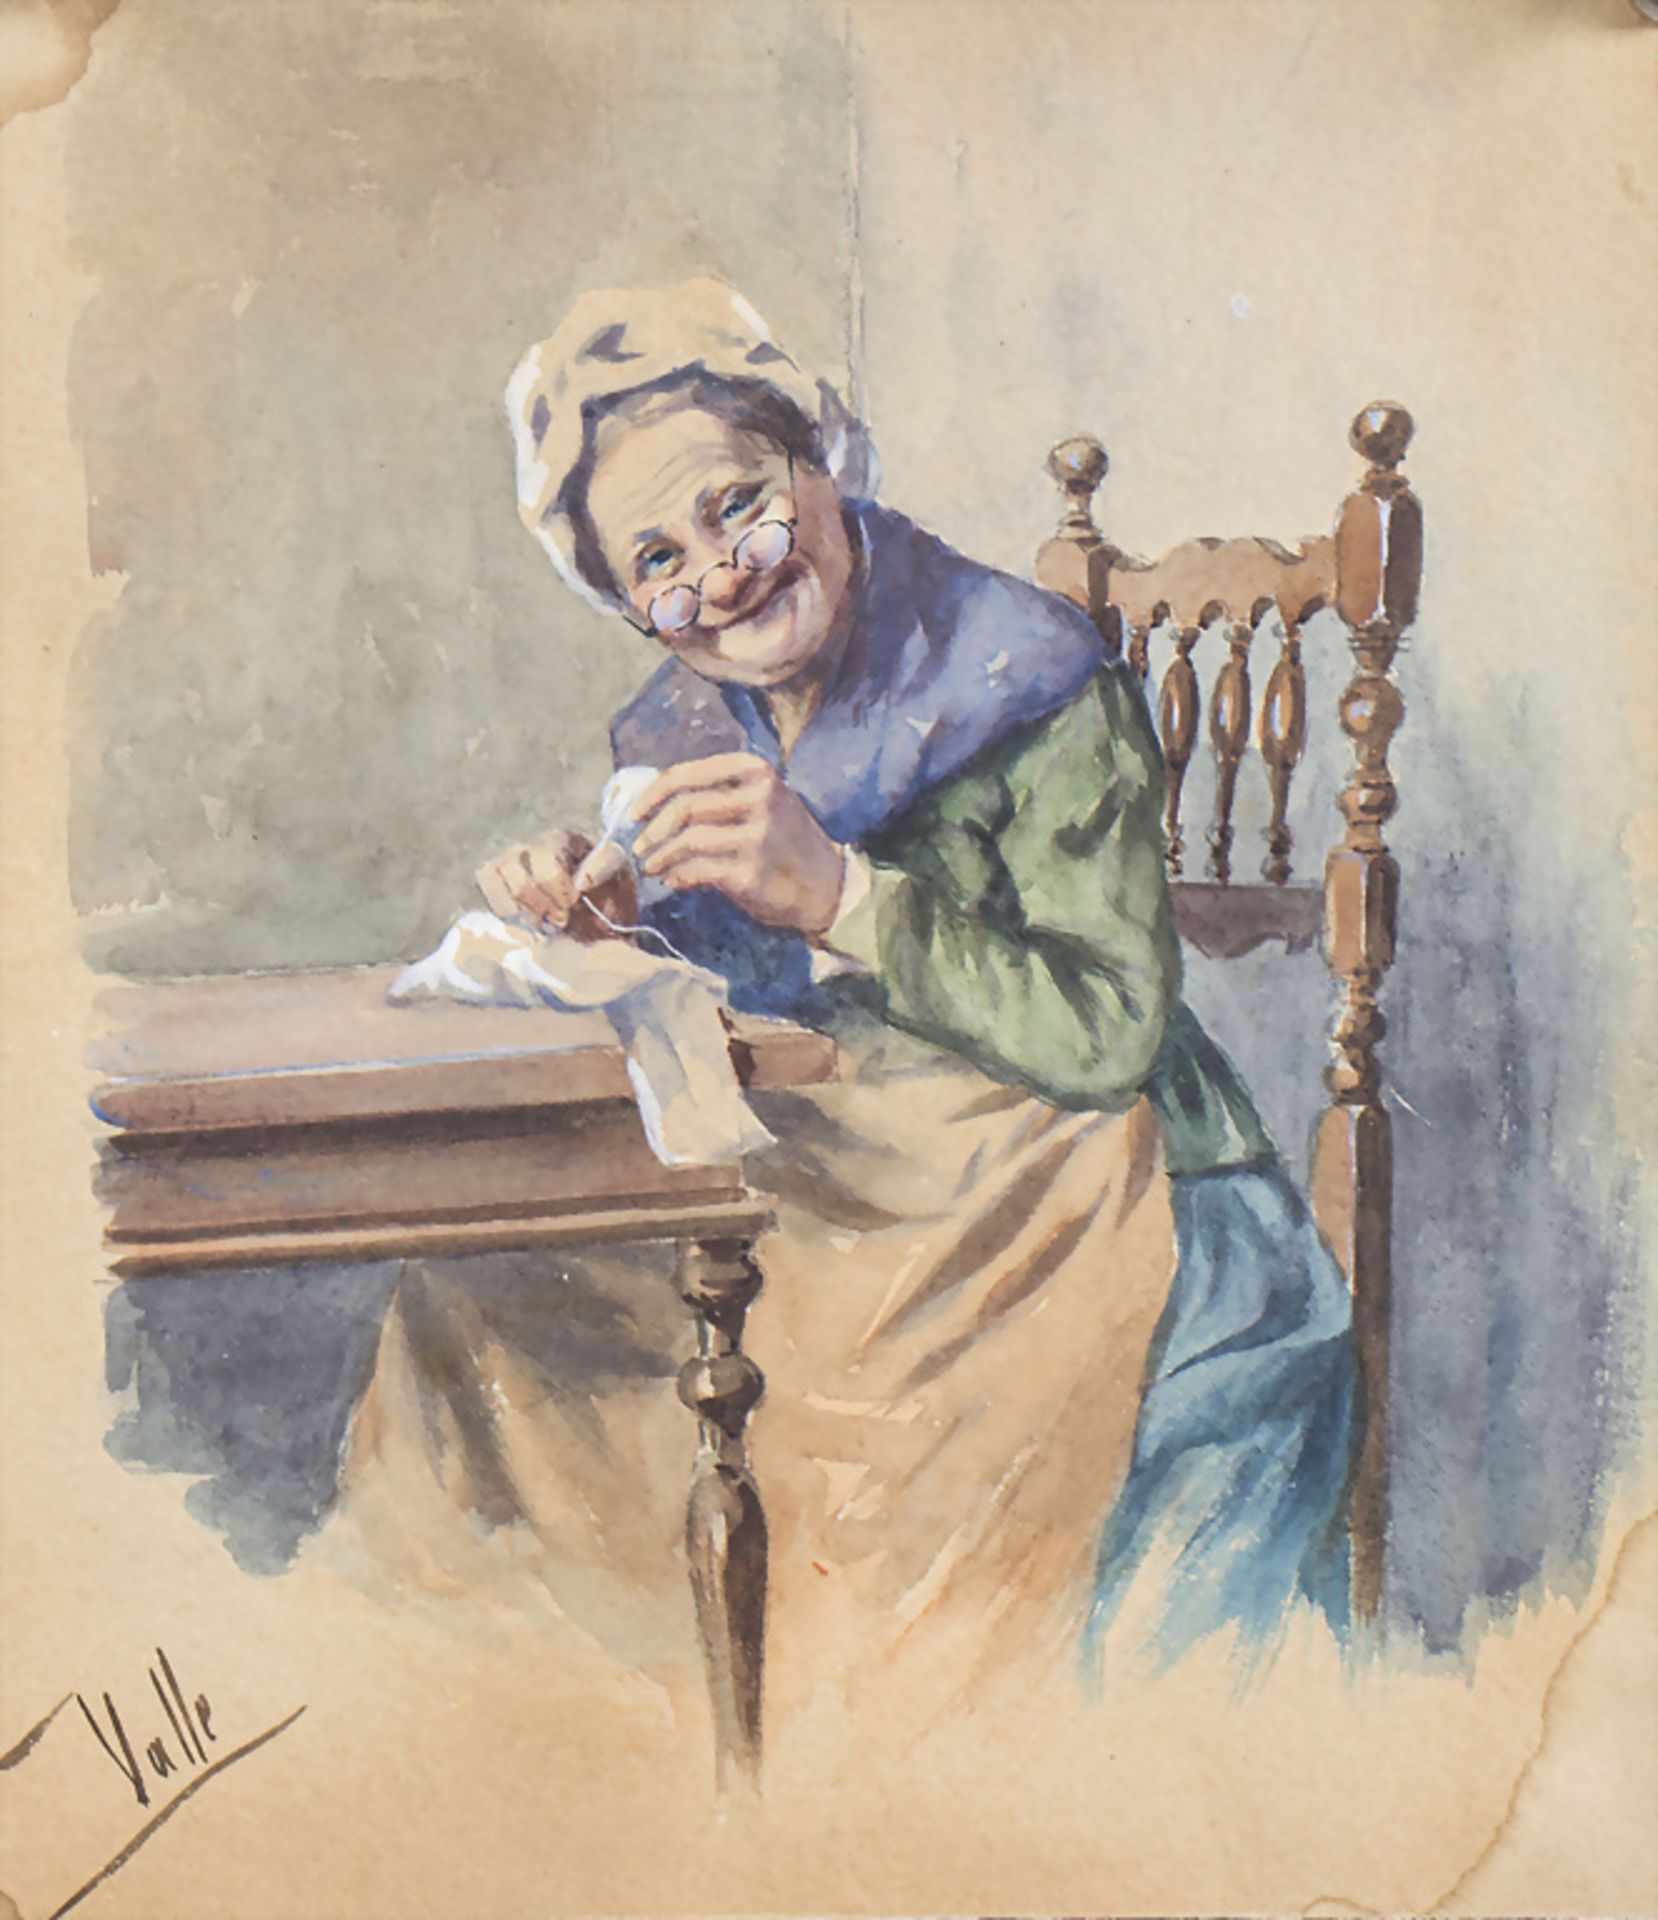 Angel DELLA VALLE (1855-1903), 'Das sanfteste Lächeln' / 'The softest smile'